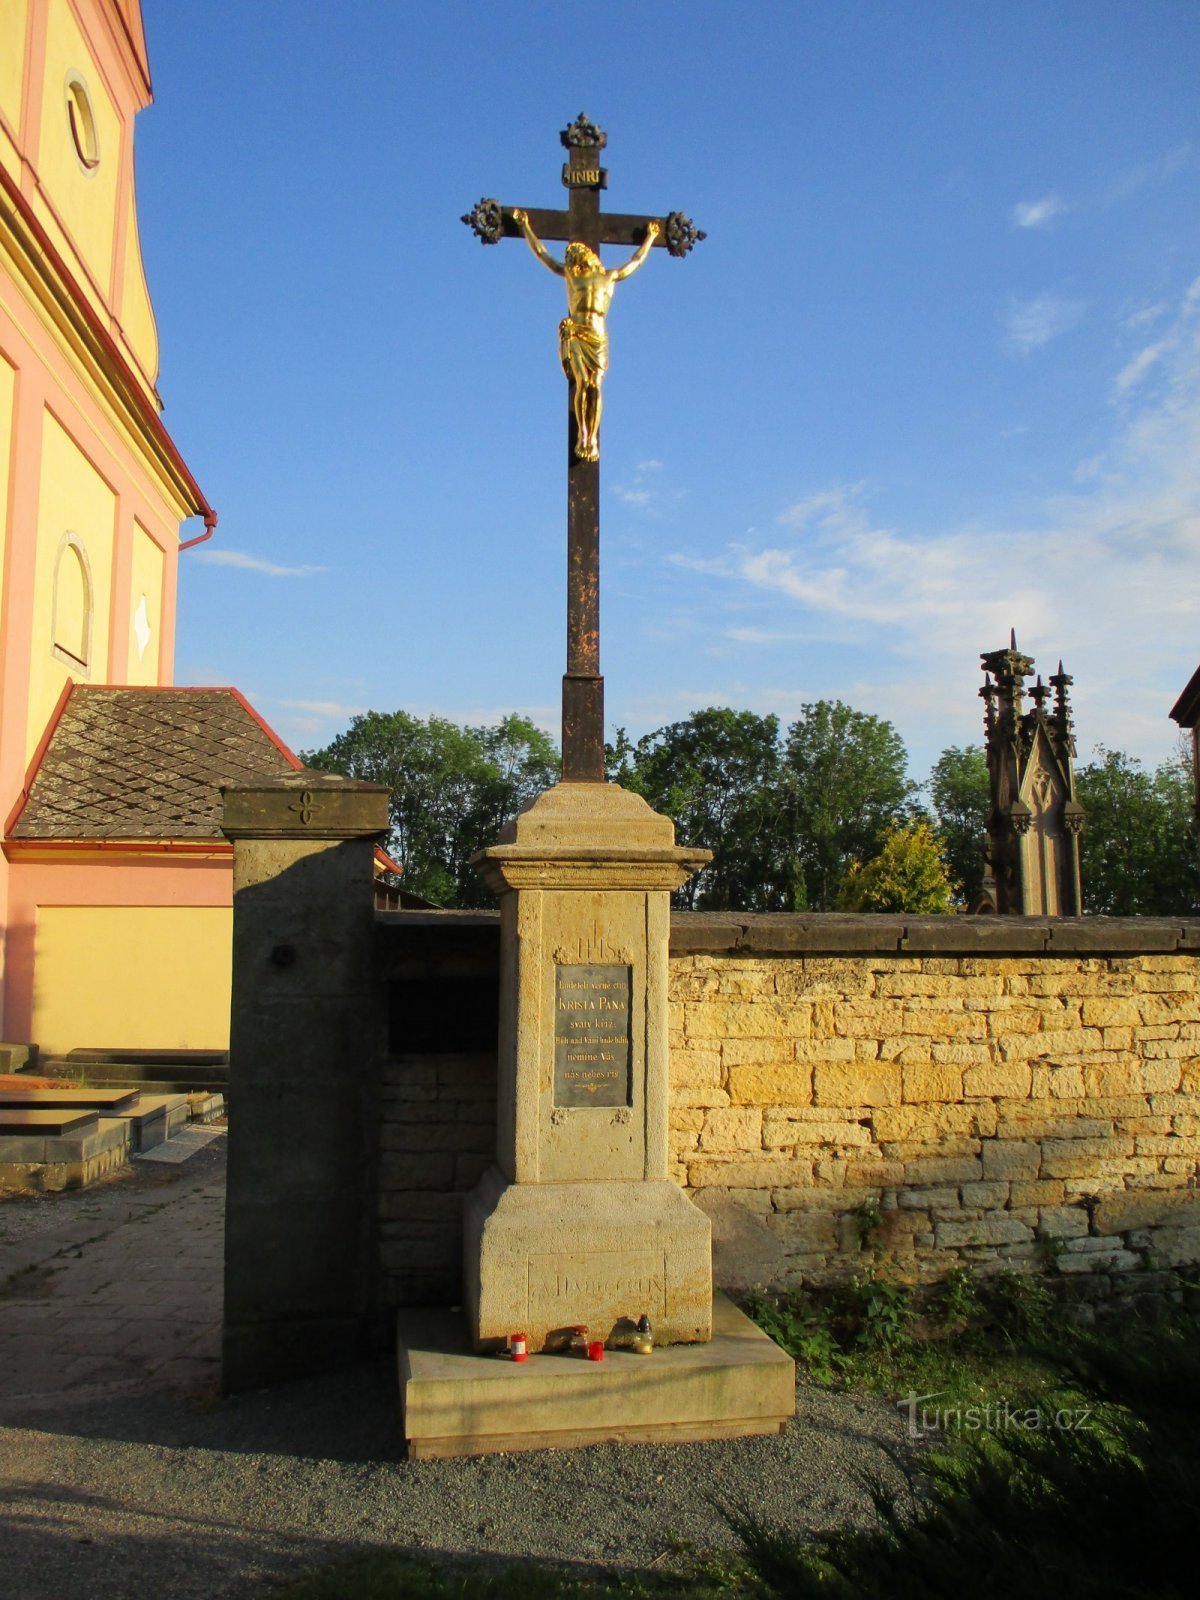 墓地入口处的十字架（Hořičky）